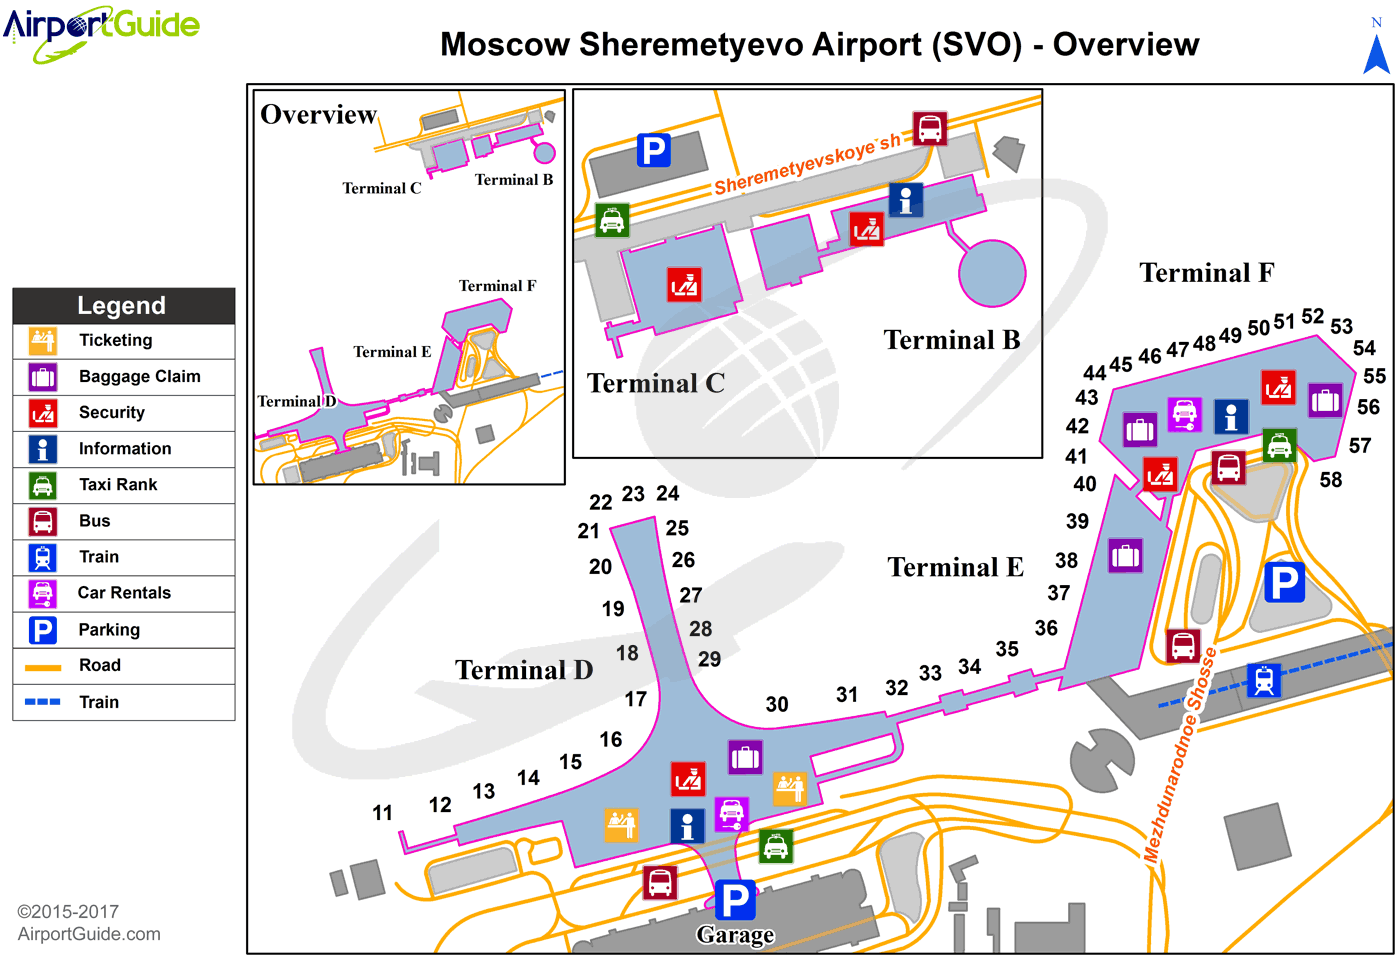 Аэропорт москва шереметьево терминалы. Терминалы в Шереметьево схема расположения терминалов аэропорта. Карта Шереметьево аэропорта с терминалами. Схема аэропорта Шереметьево с терминалами. Схема терминала в аэропорта Шереметьево Москва.